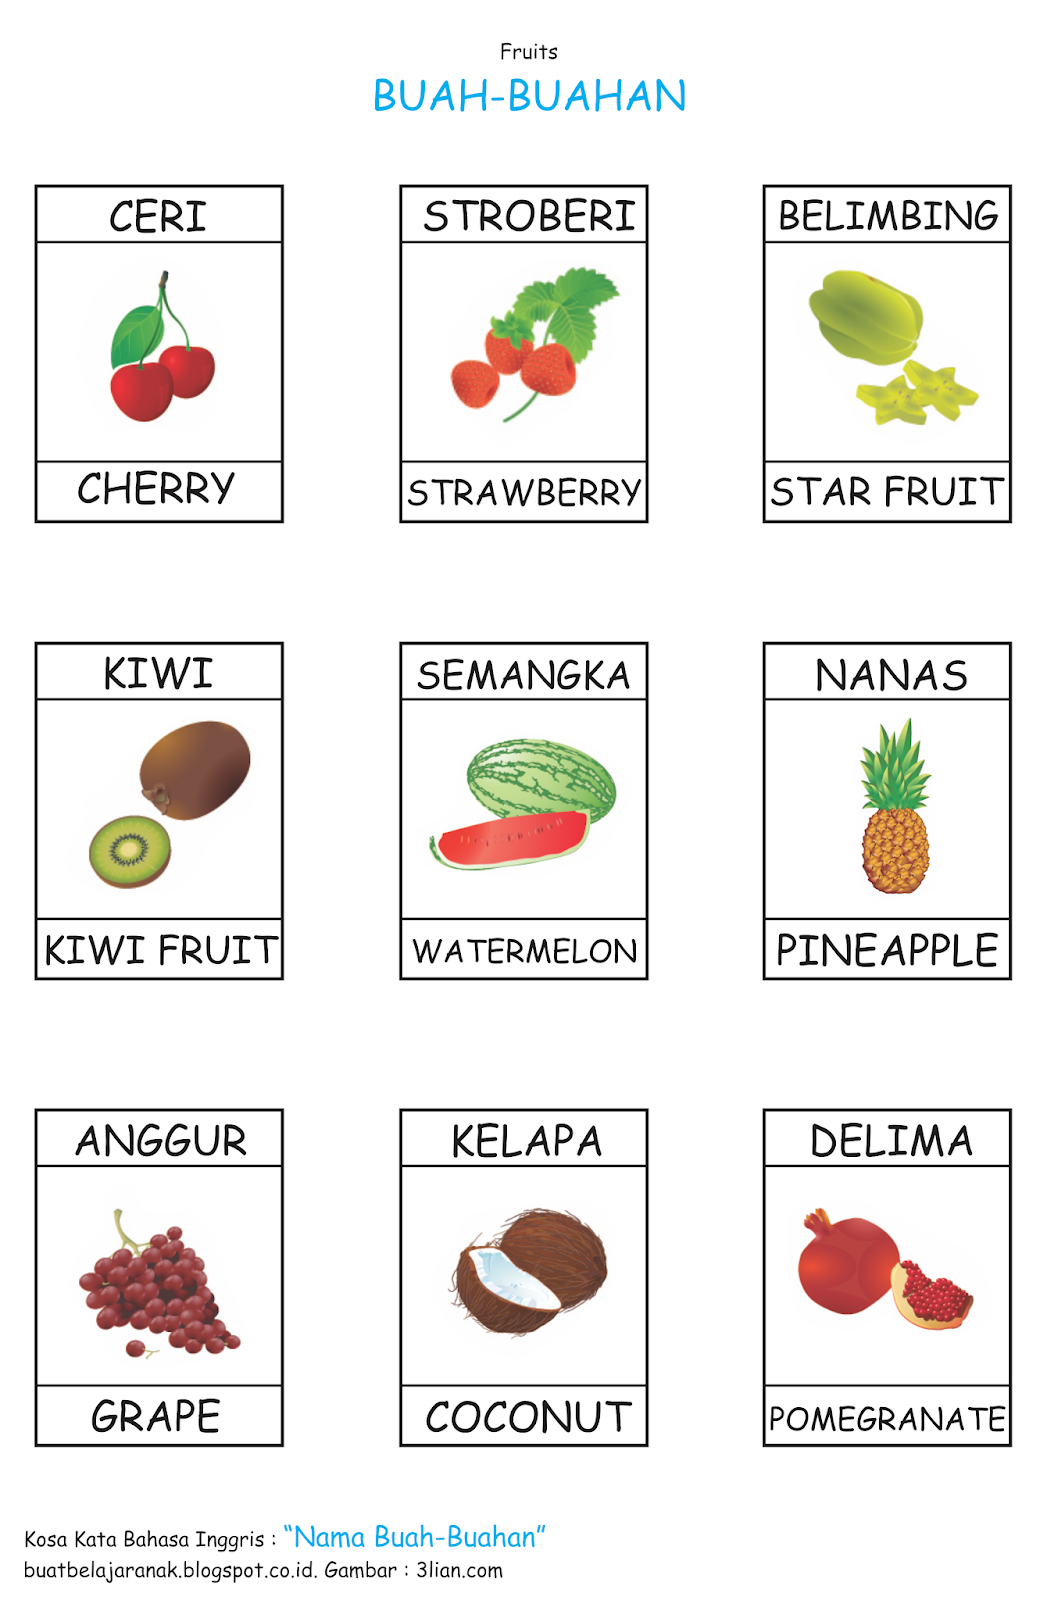 Kosa Kata Nama Buah  buahan Dalam Bahasa inggris Buat 